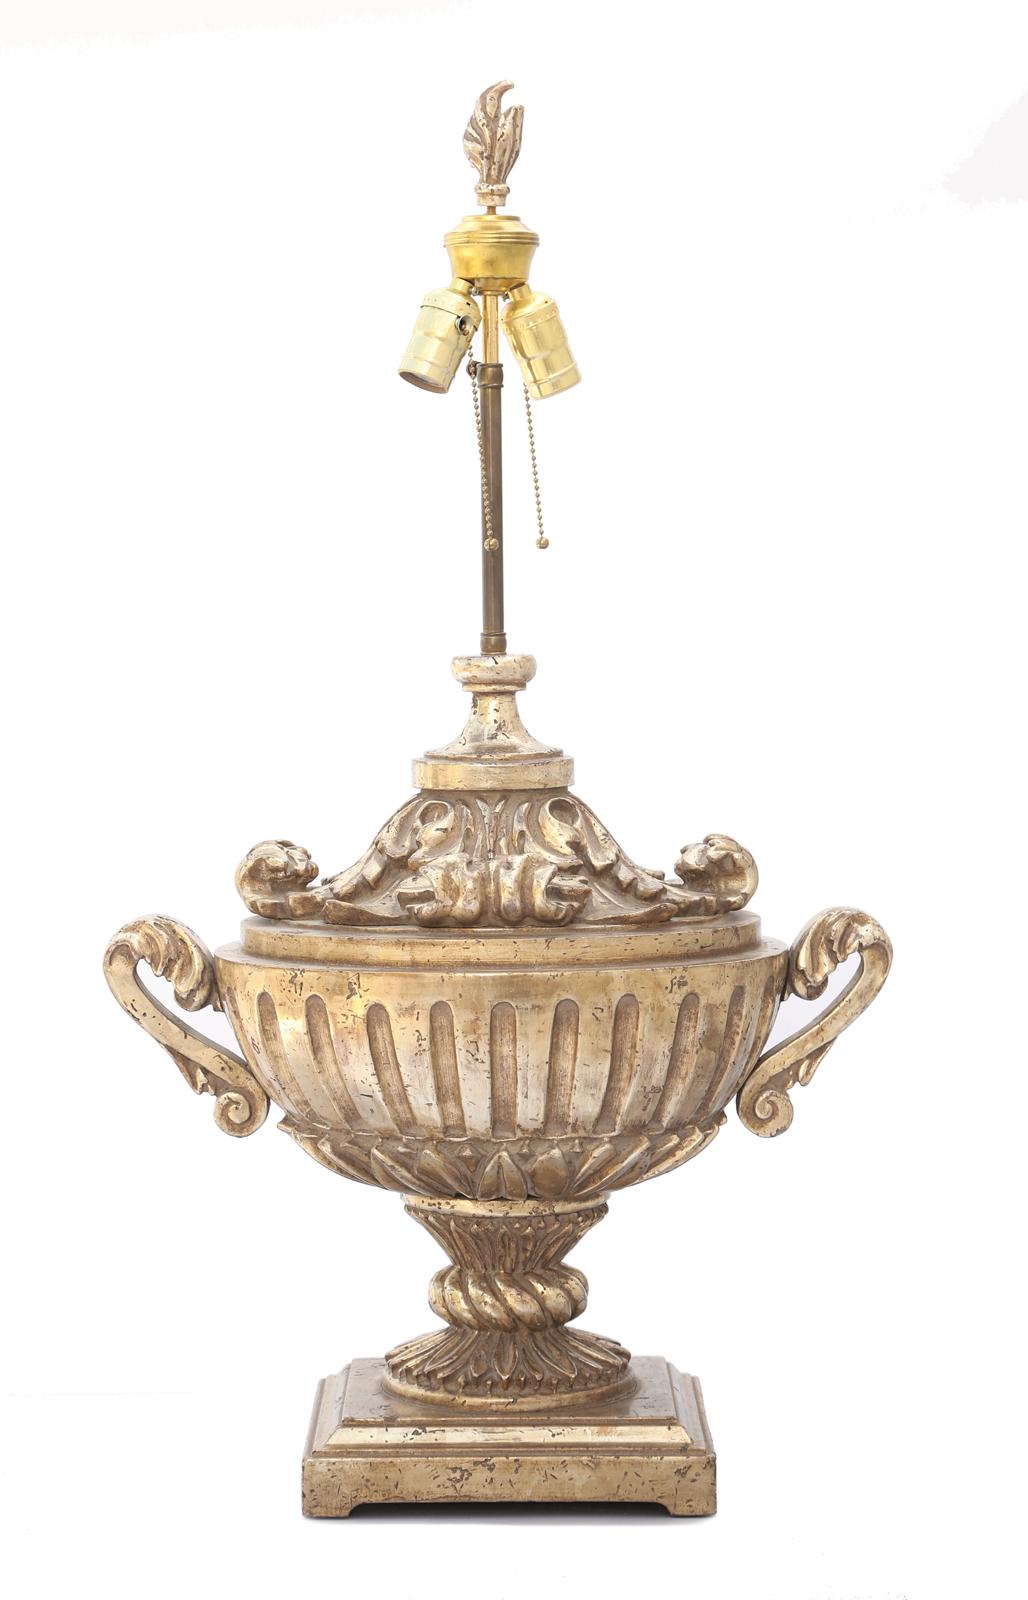 Einzelne Lampe, aus vergoldetem Silberholz, handgeschnitzt in eine Campana-Urne aus verkauftem Holz; der eiförmige, kannelierte Körper, flankiert von S-förmigen Henkeln, sitzt auf einem blattförmigen Becher, dessen sanduhrförmiger Hals mit einer